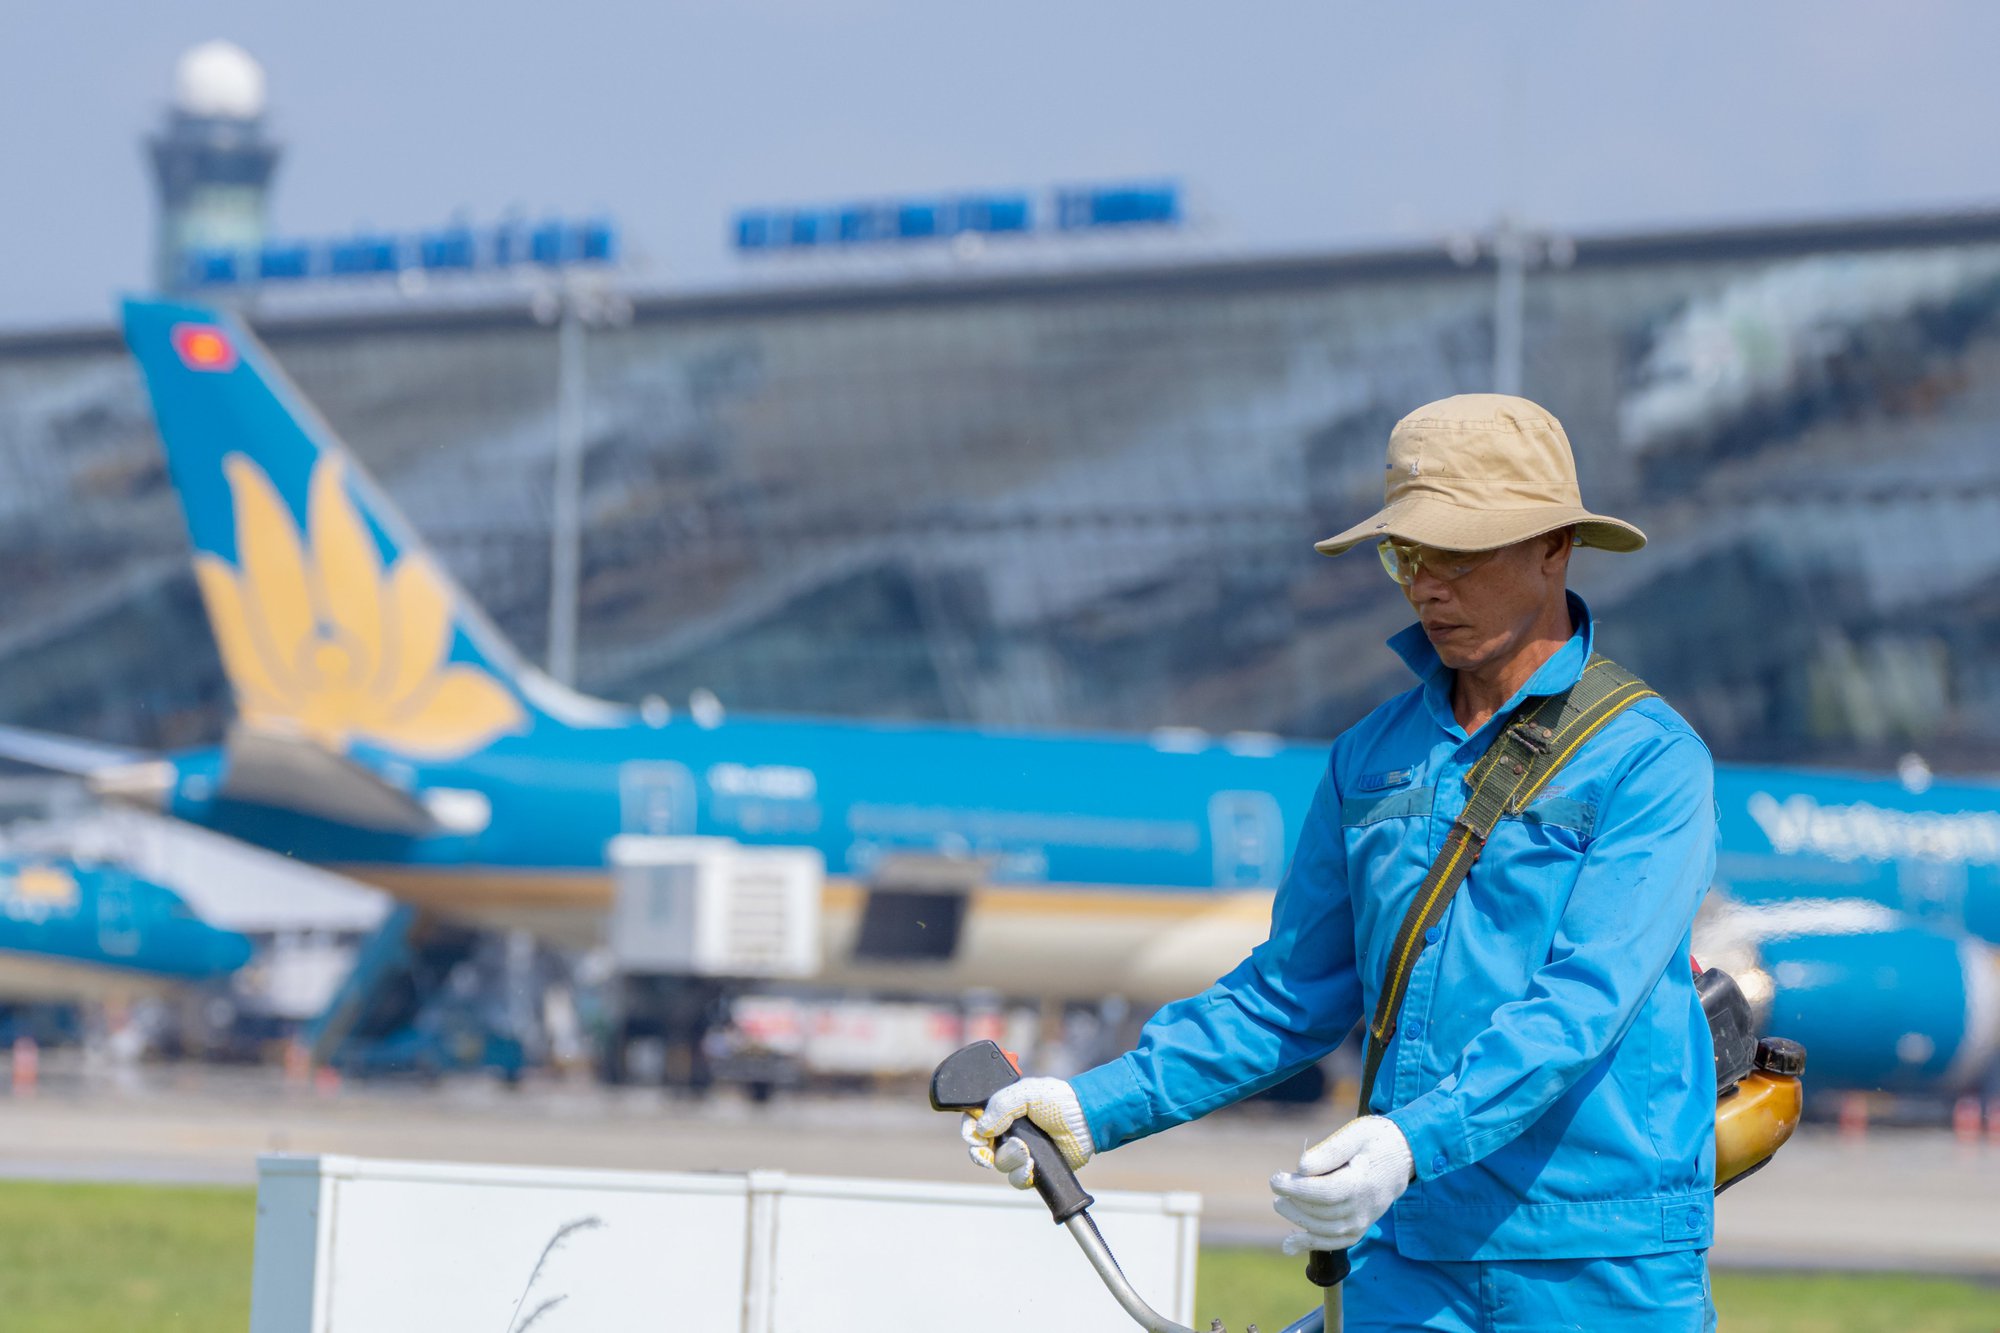 Sân bay Nội Bài sẽ có 4 đường cất/hạ cánh vào năm 2050 - Ảnh 1.